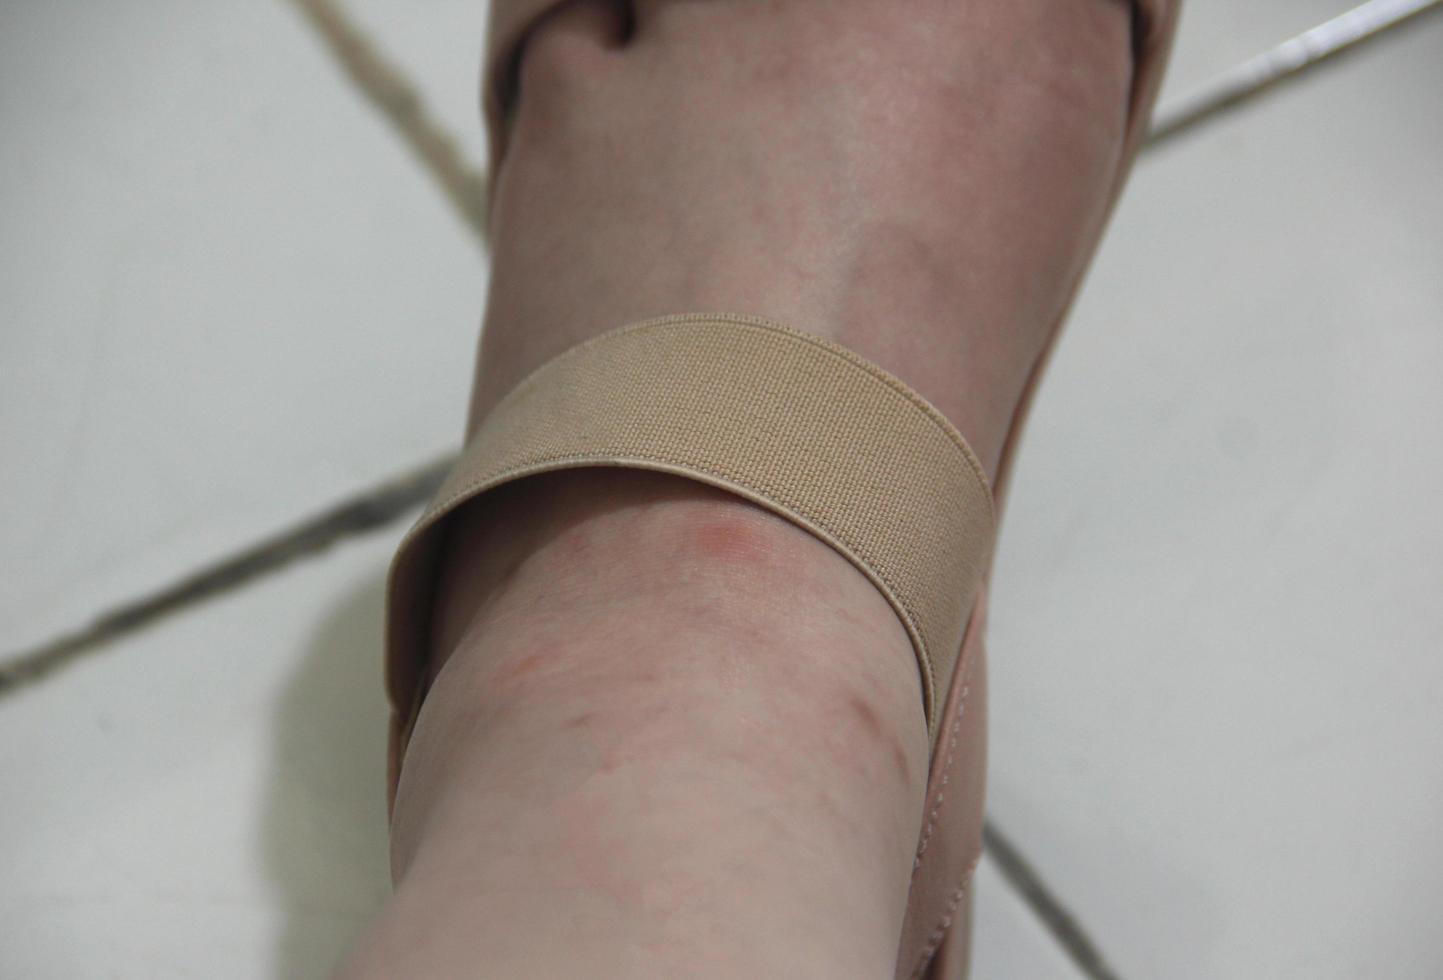 Frauen Bein mit braun Schuhe Gurt. sichtbar Rötung stoßen Narbe auf Haut, brauchen zu Sein behandelt mit Salbe. isoliert Bein Foto auf Weiß Keramik Boden.